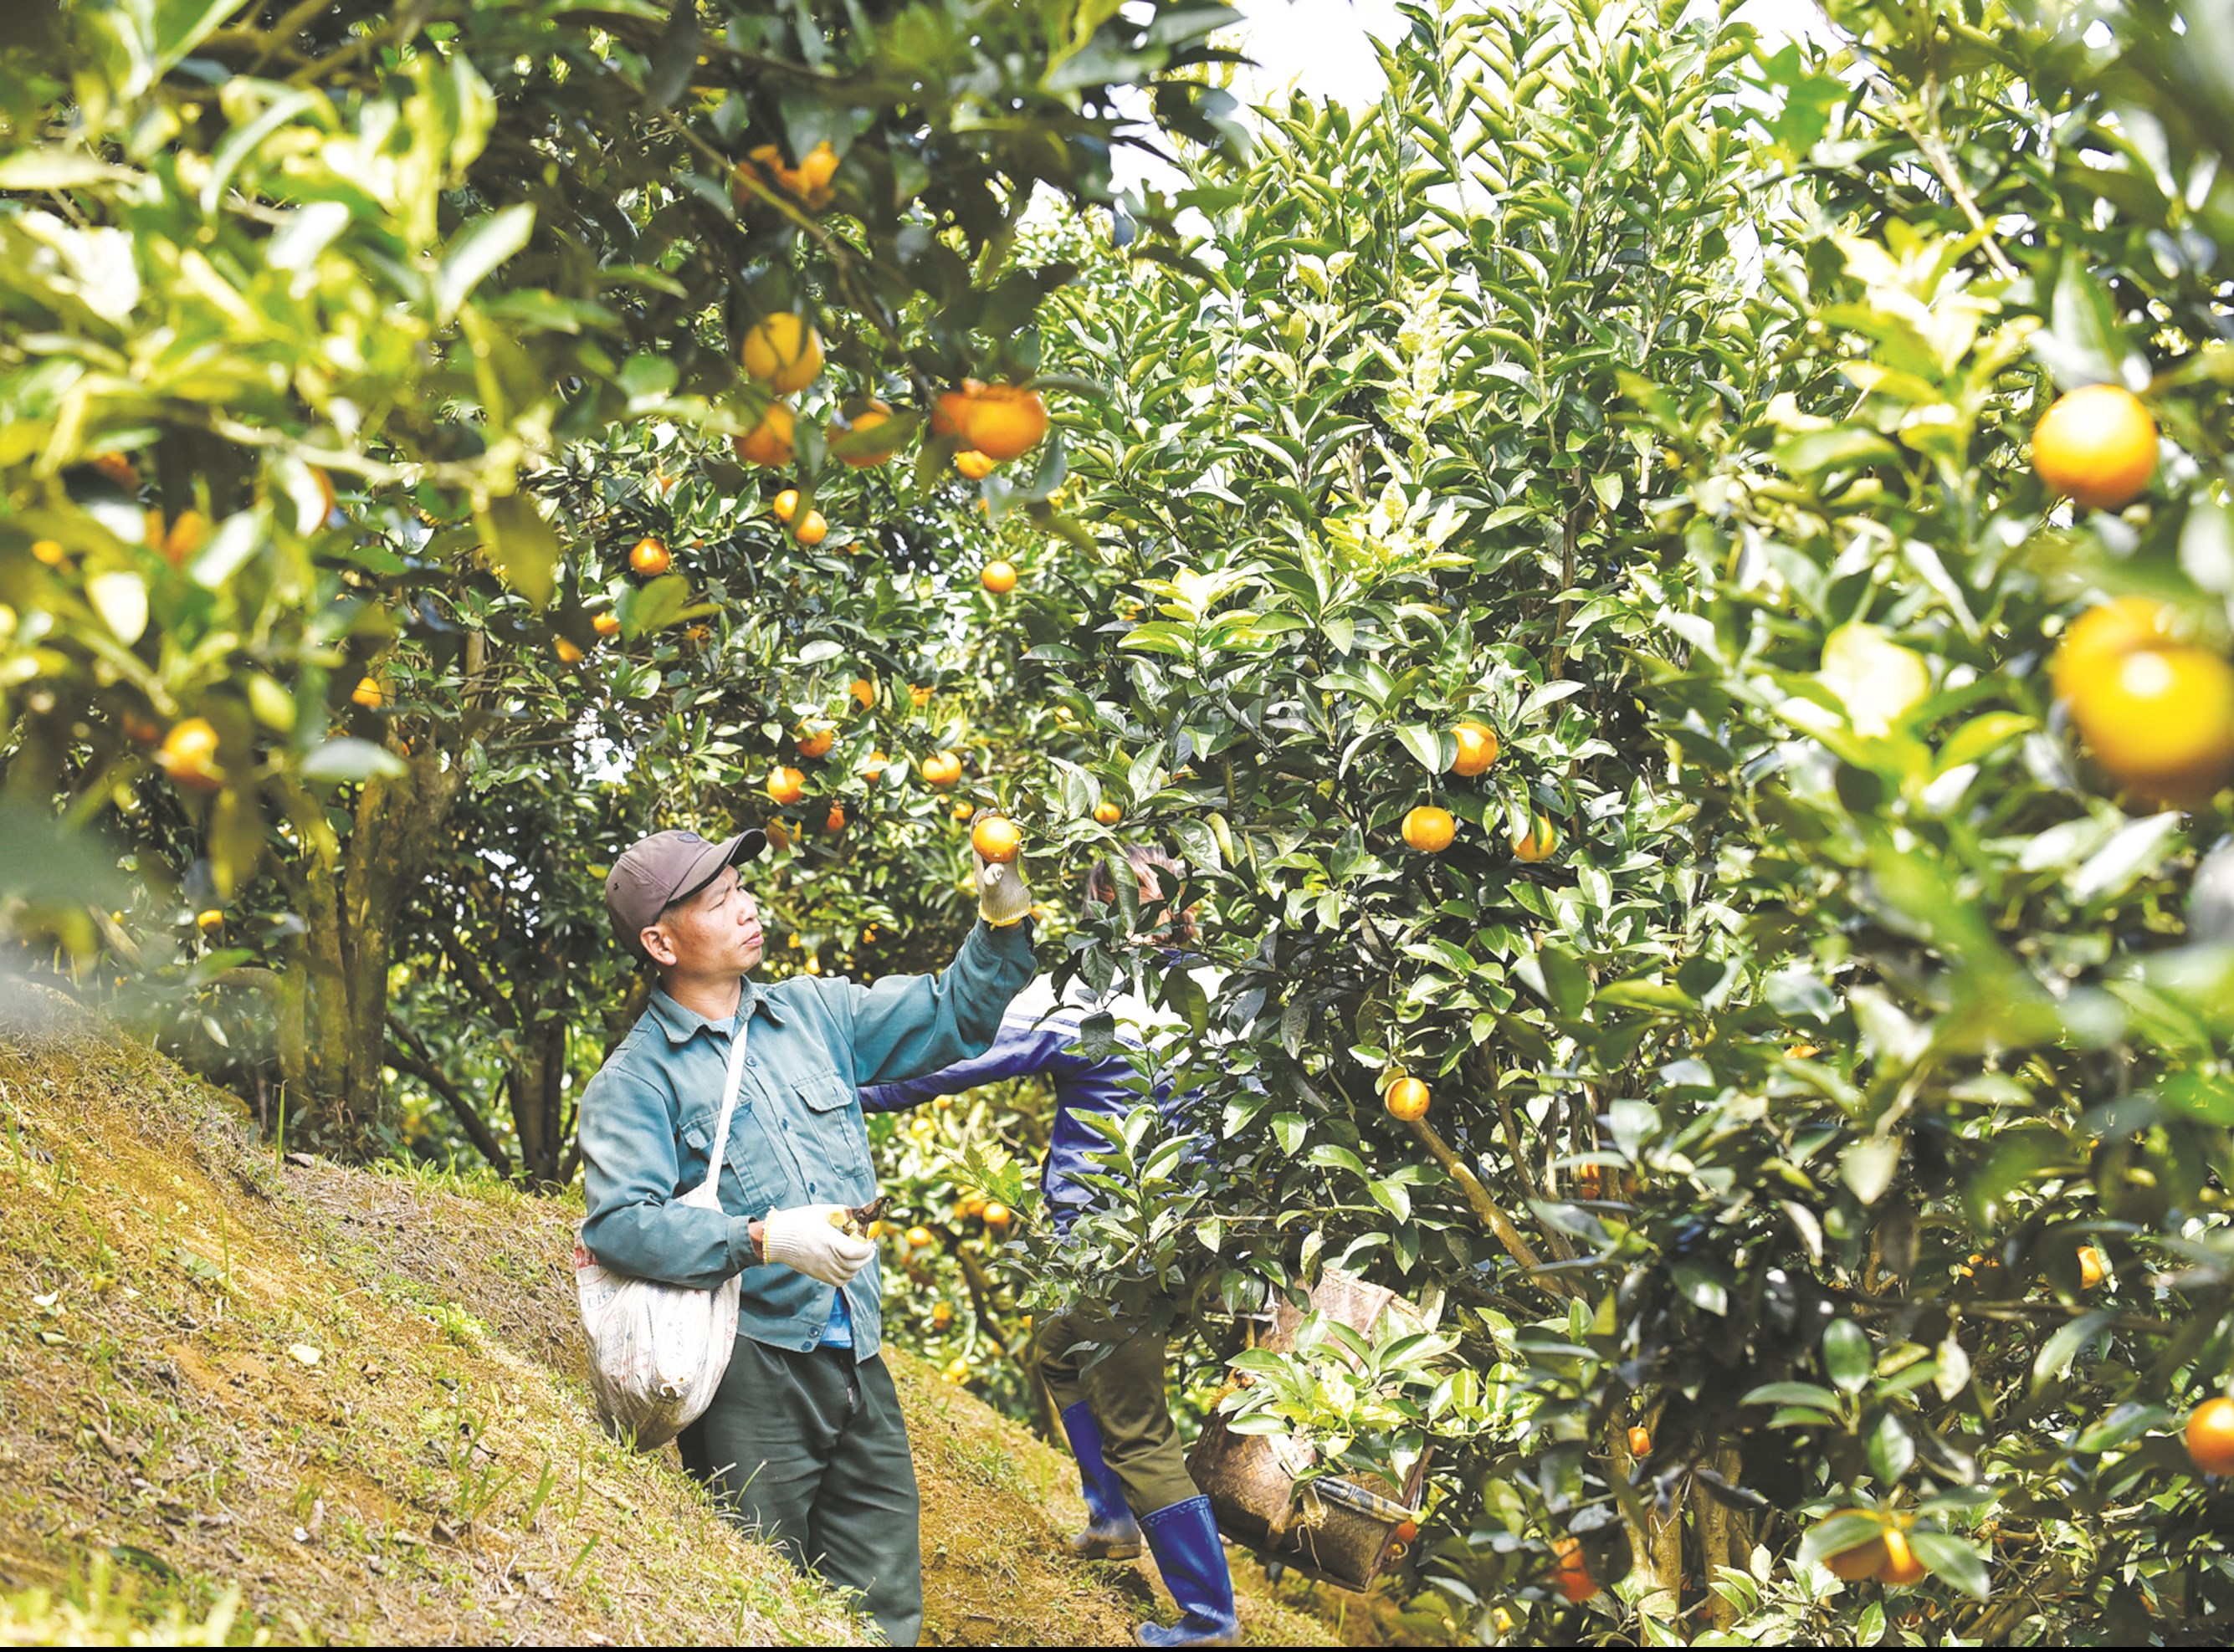 Ông Hà Văn Thưng (61 tuổi), cùng với một hộ dân khác trong bản Son làm chủ một vườn cam, với khoảng hơn 1ha cam vàng và cam canh, trong đó có khoảng 800 gốc đang vào vụ thu hoạch.